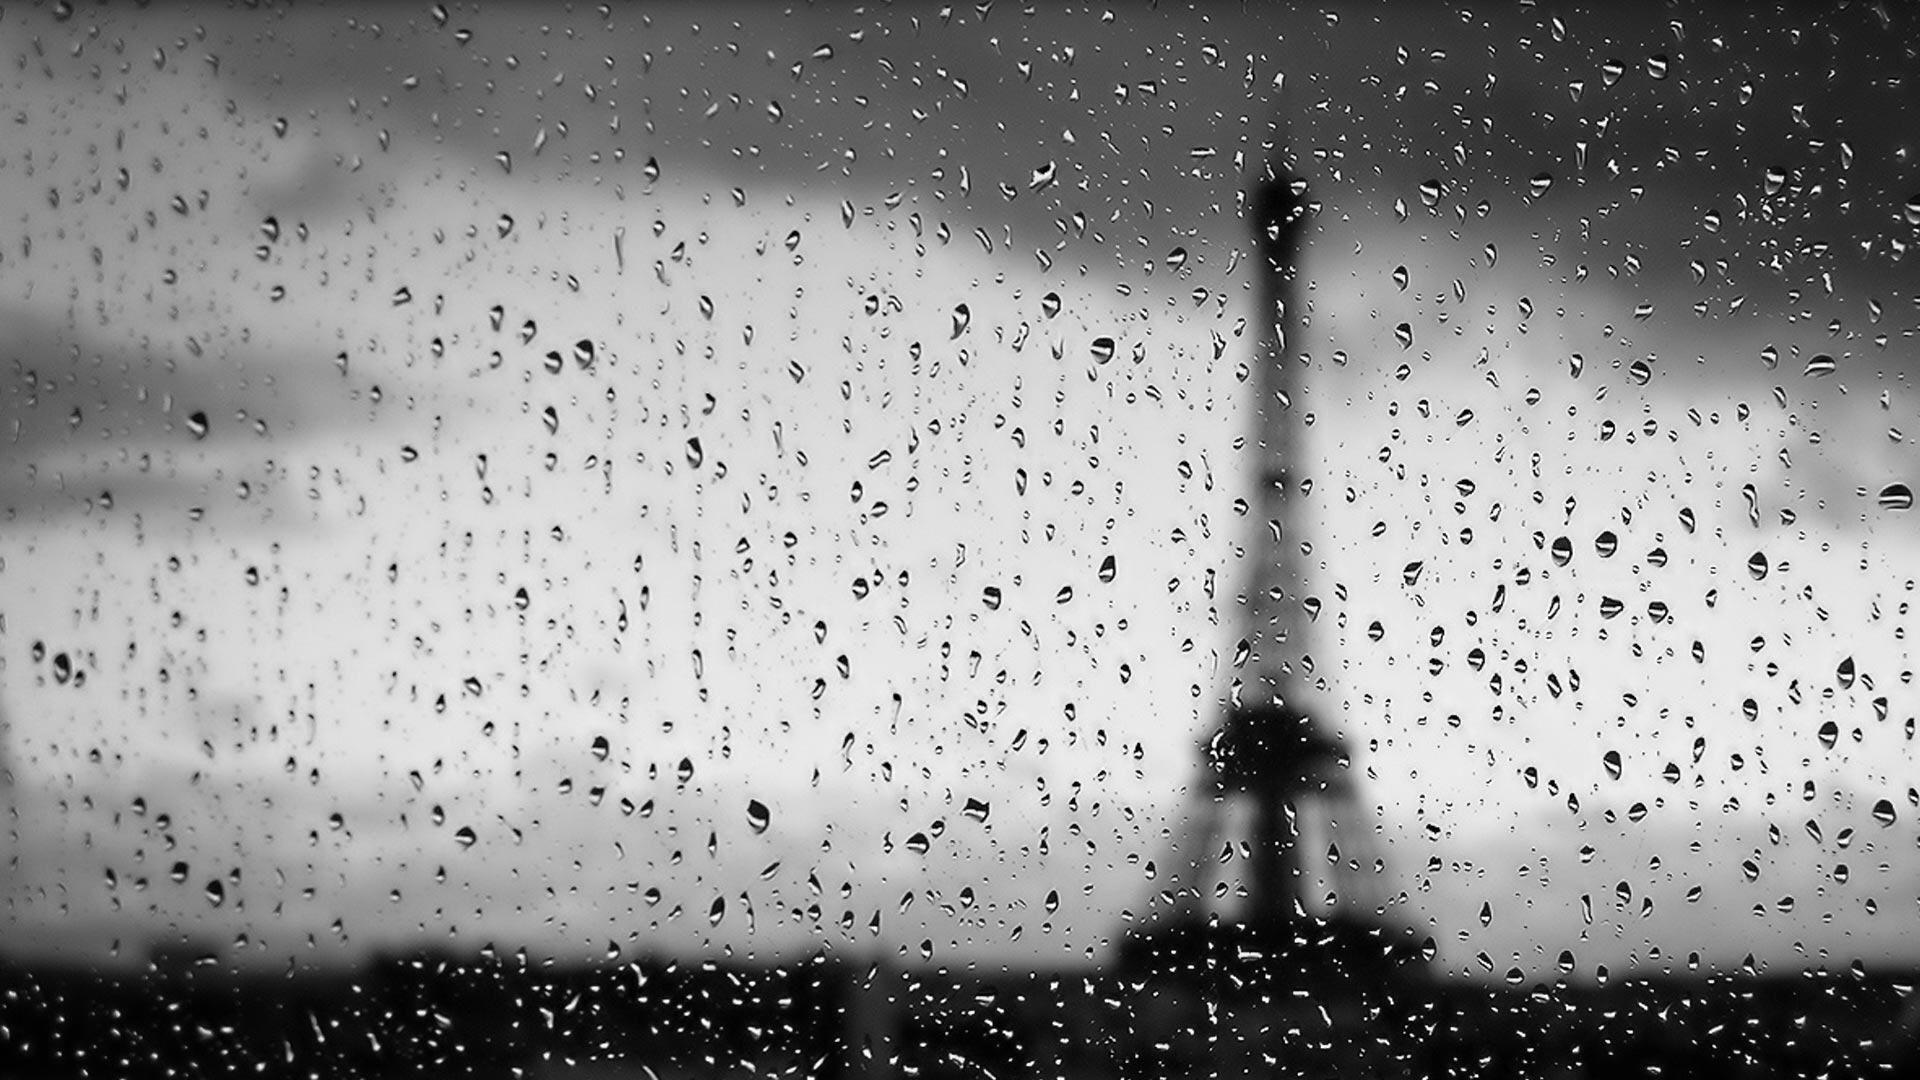 1920x1080 hình nền máy tính mưa.  Hình nền mưa, Paris mưa, hình nền Paris